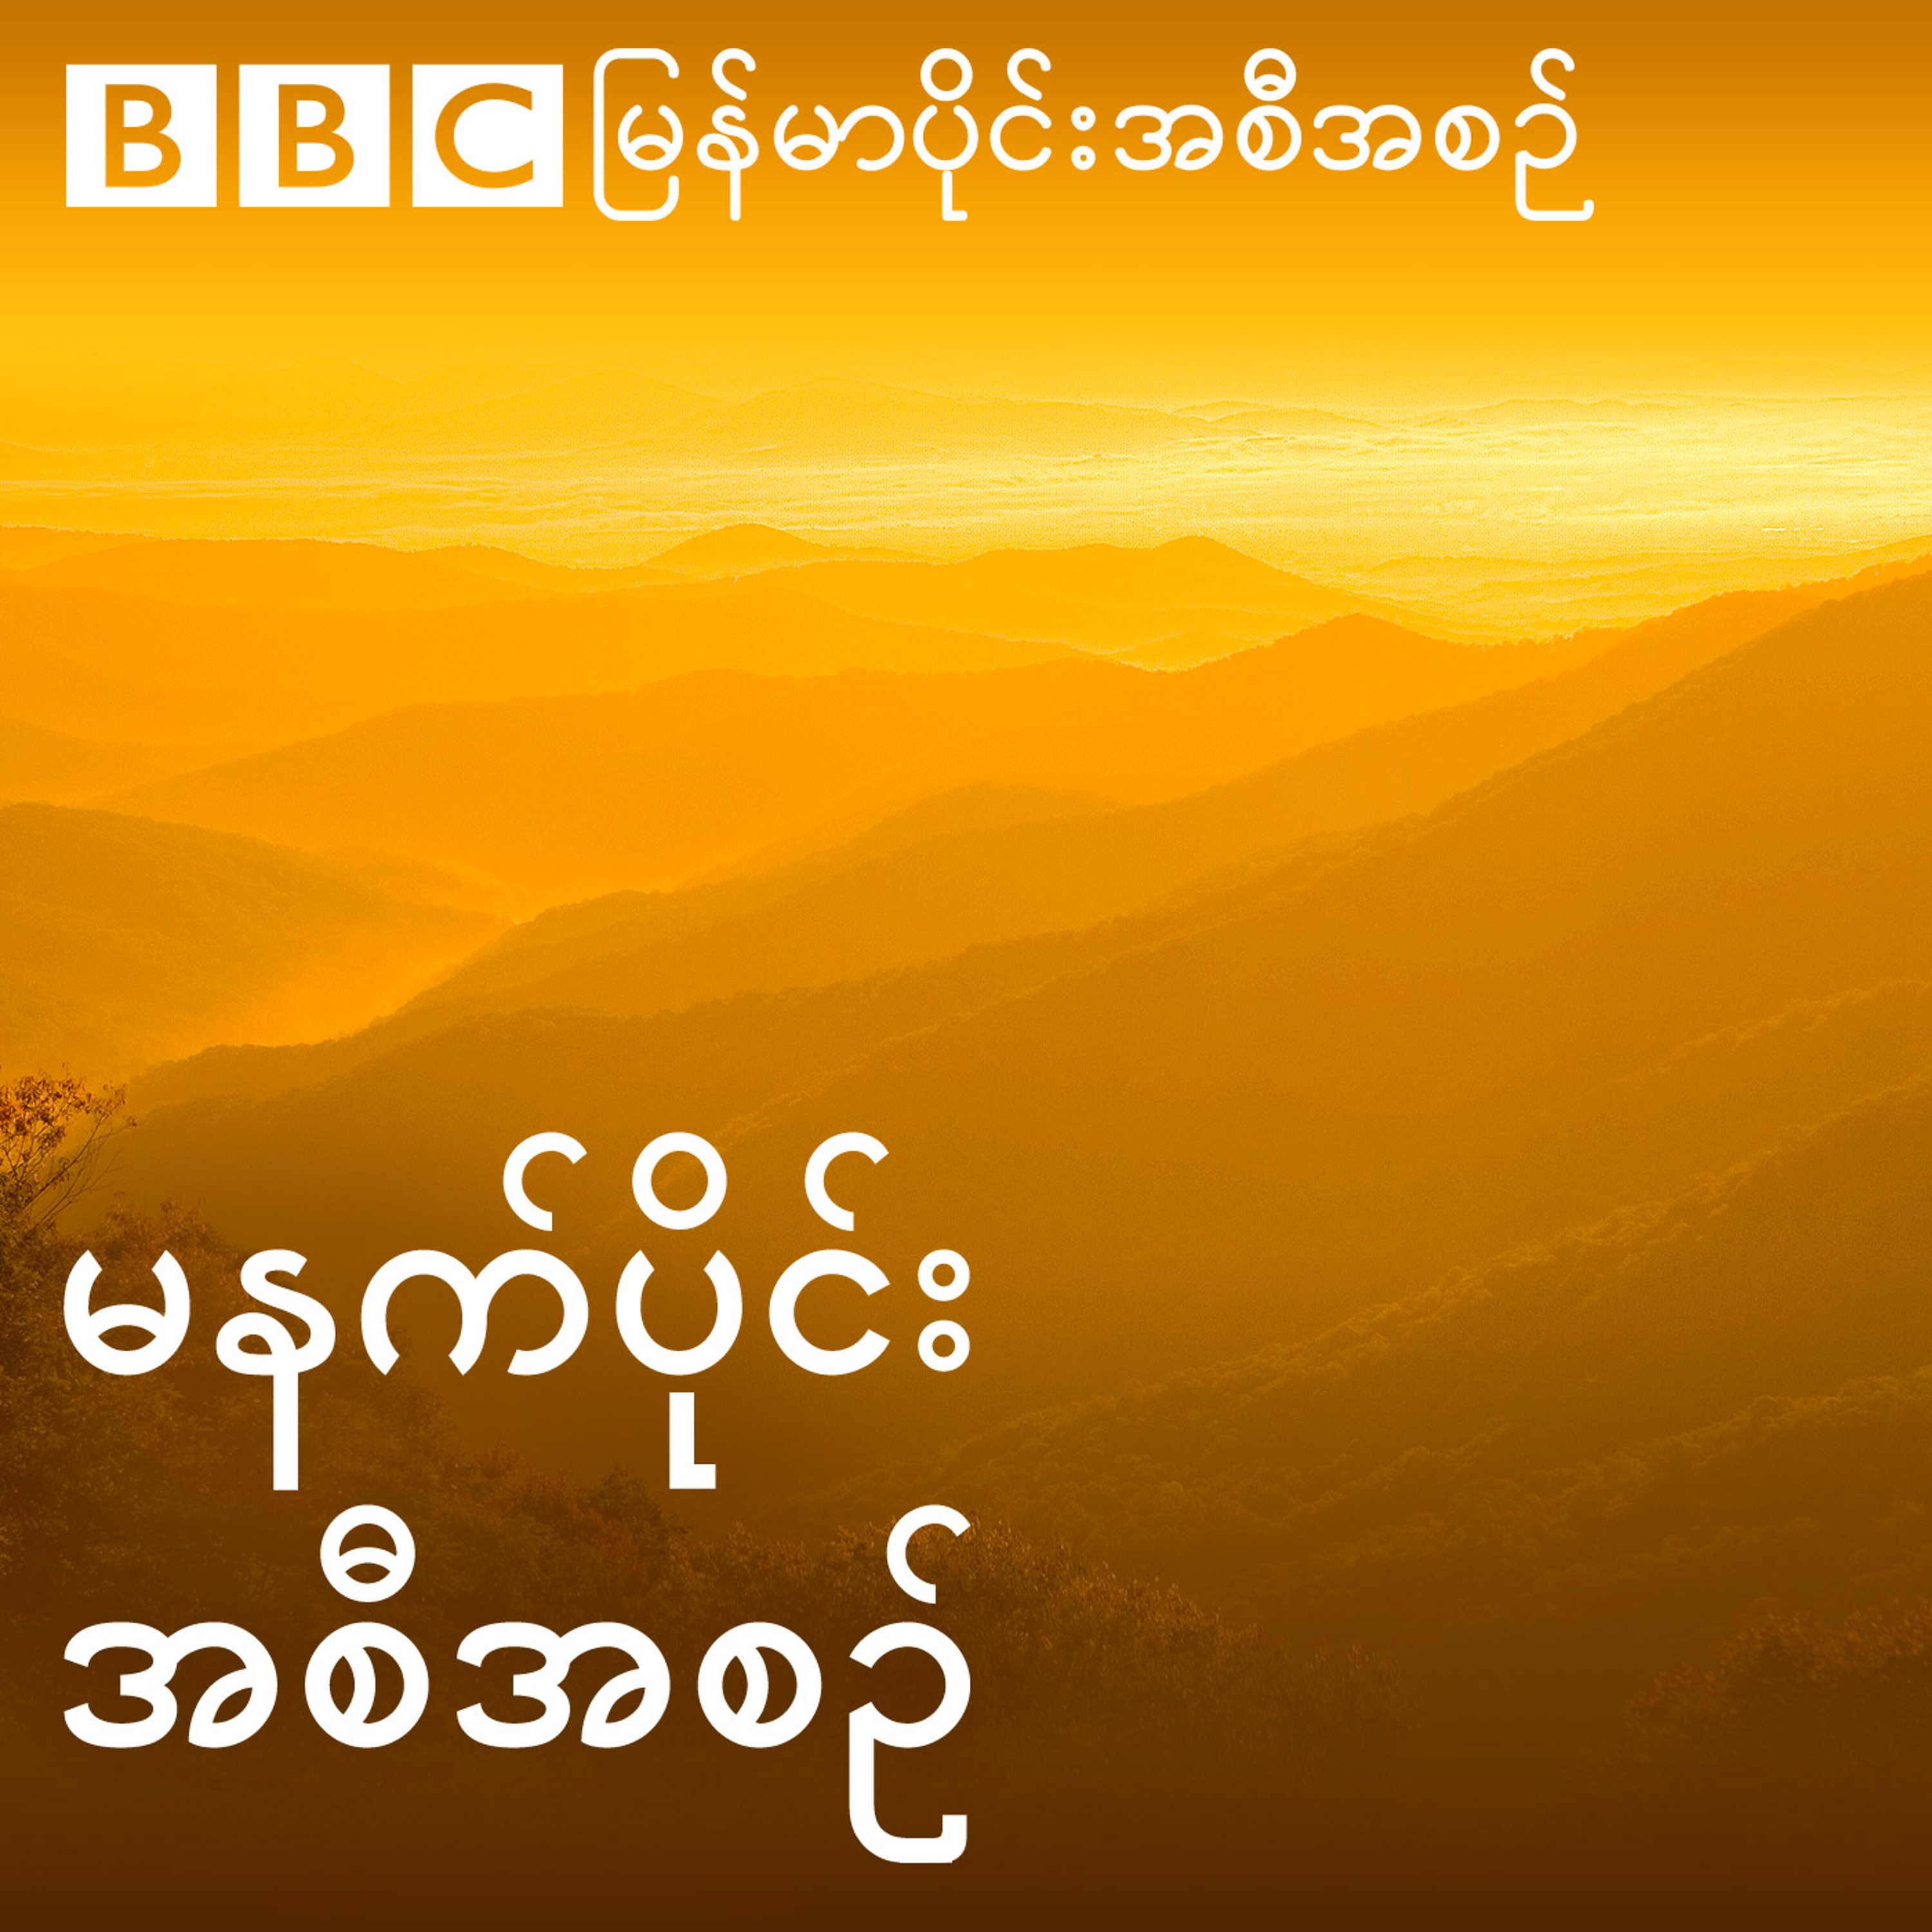 ဘီဘီစီမြန်မာပိုင်း မနက်ခင်းသတင်းအစီအစဉ်